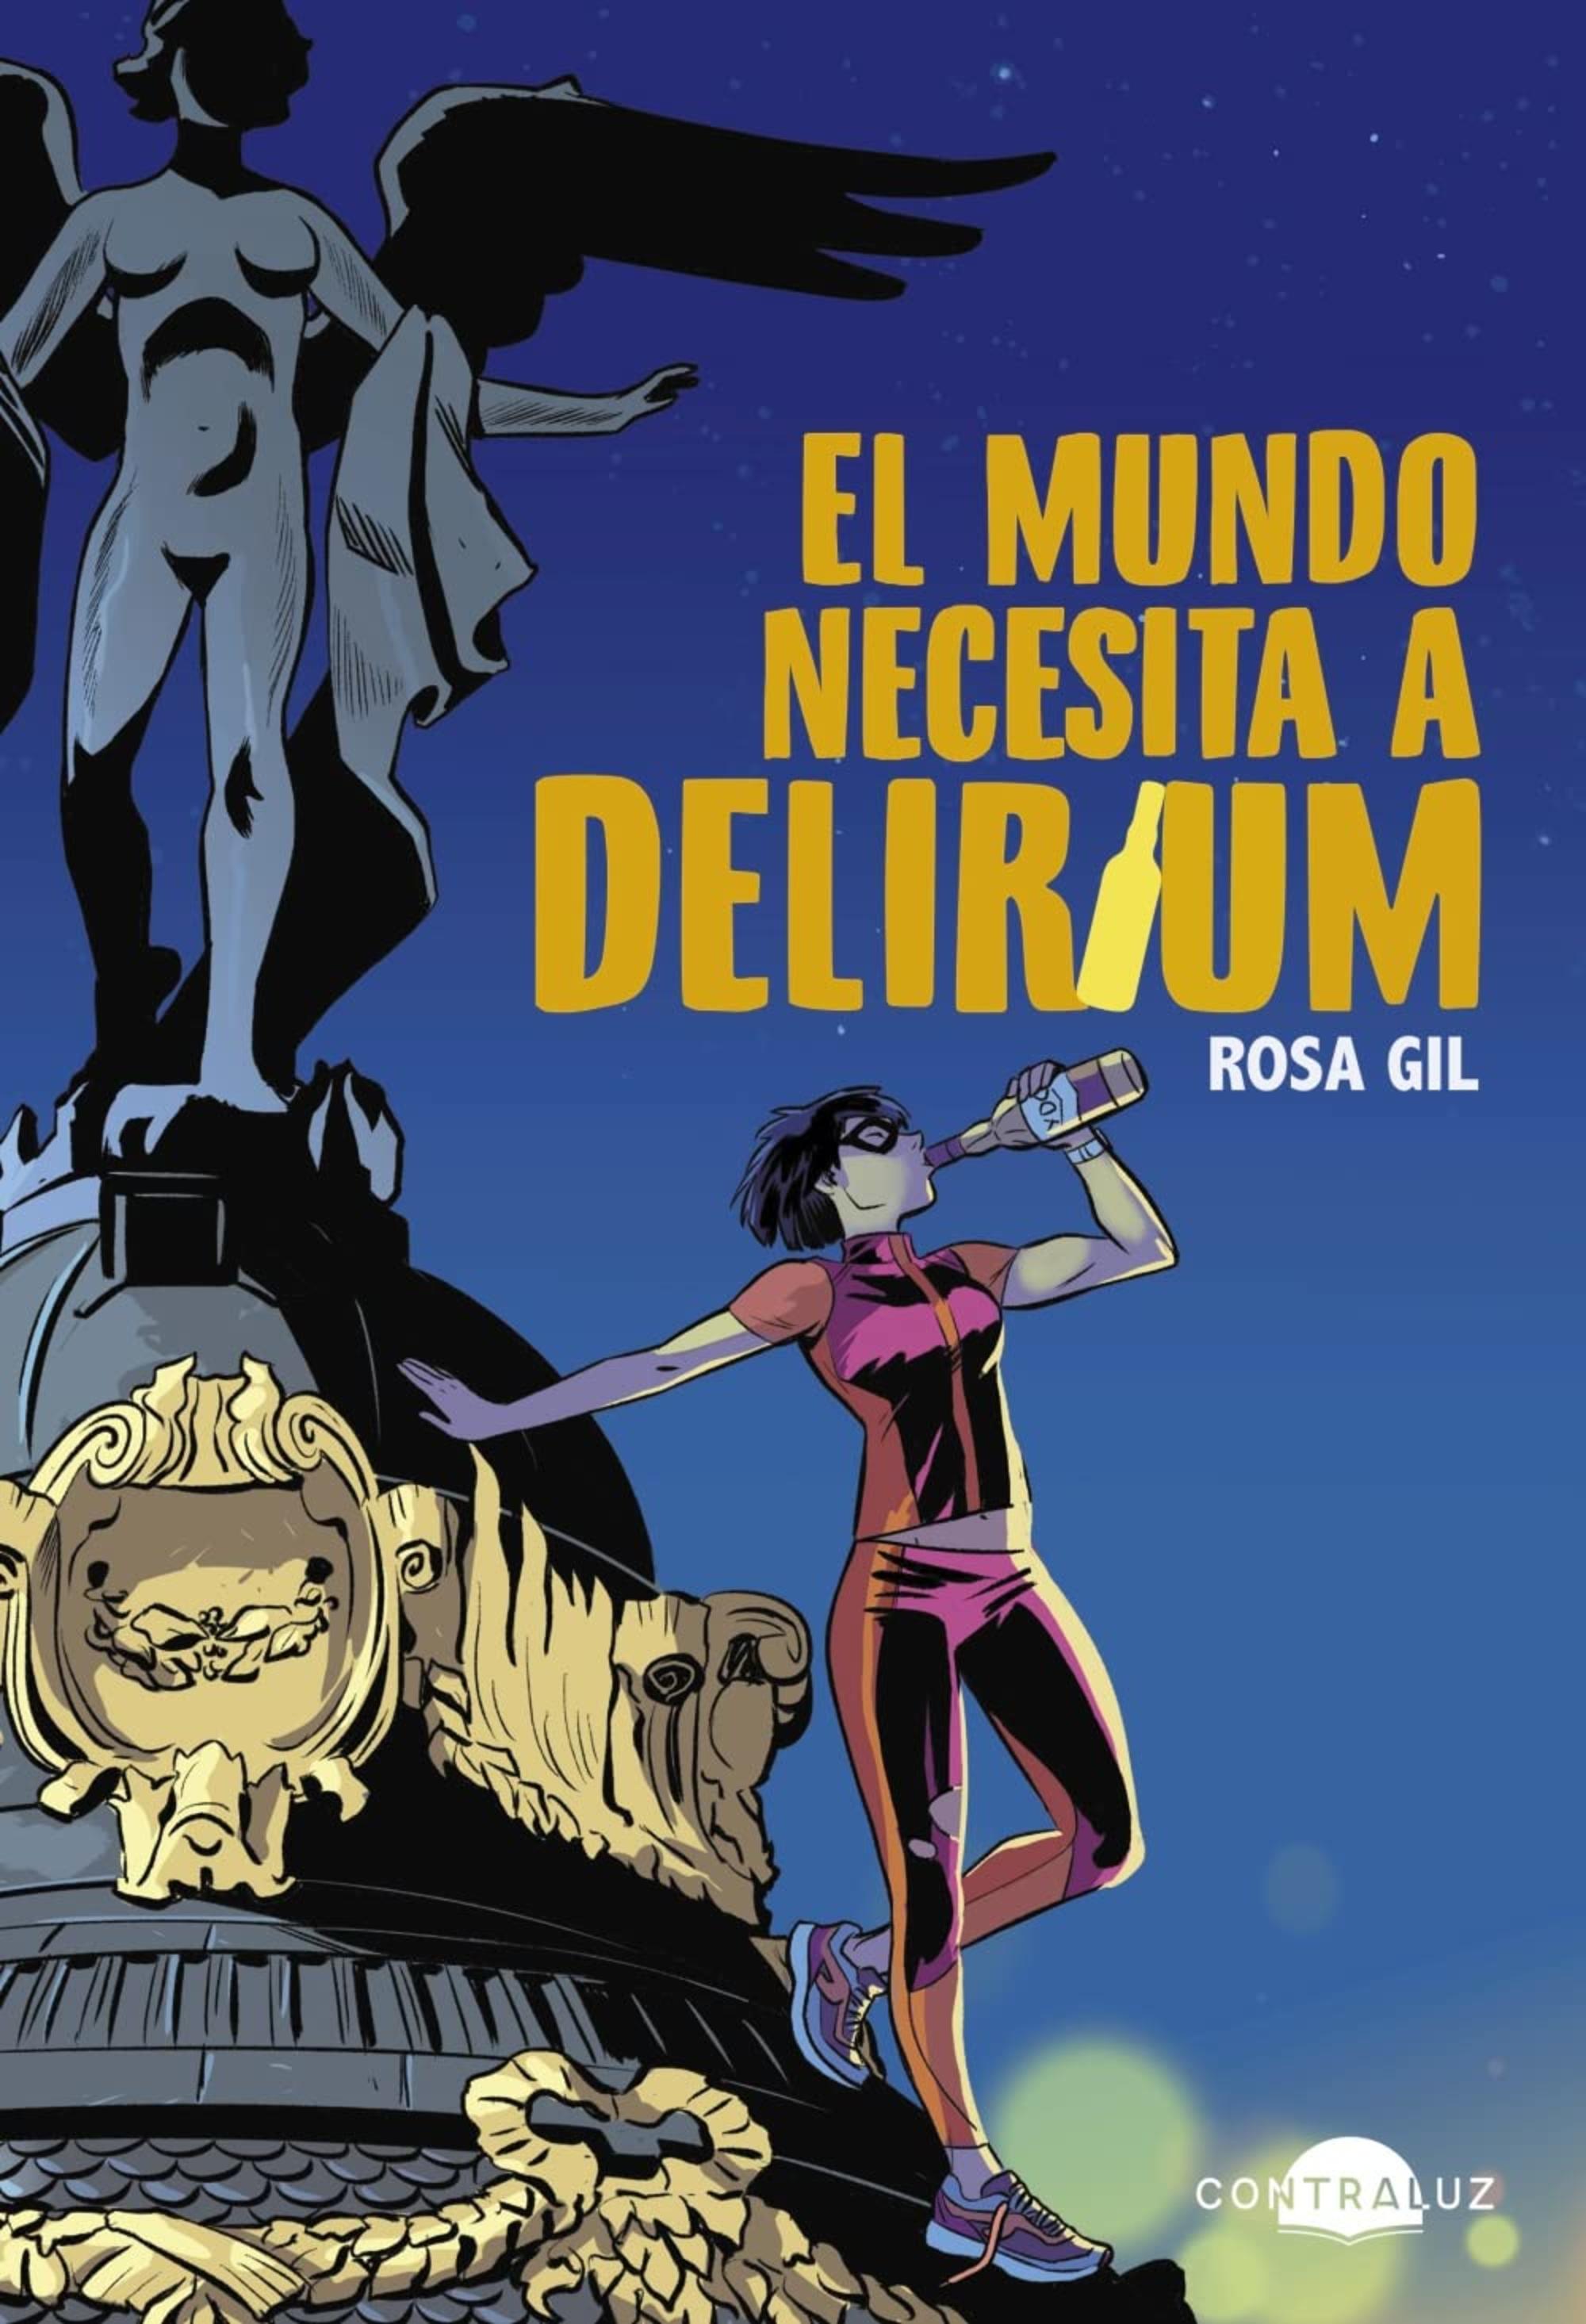 Portada de la novela ‘El mundo necesita a Delirium’, con ilustración de Natacha Bustos